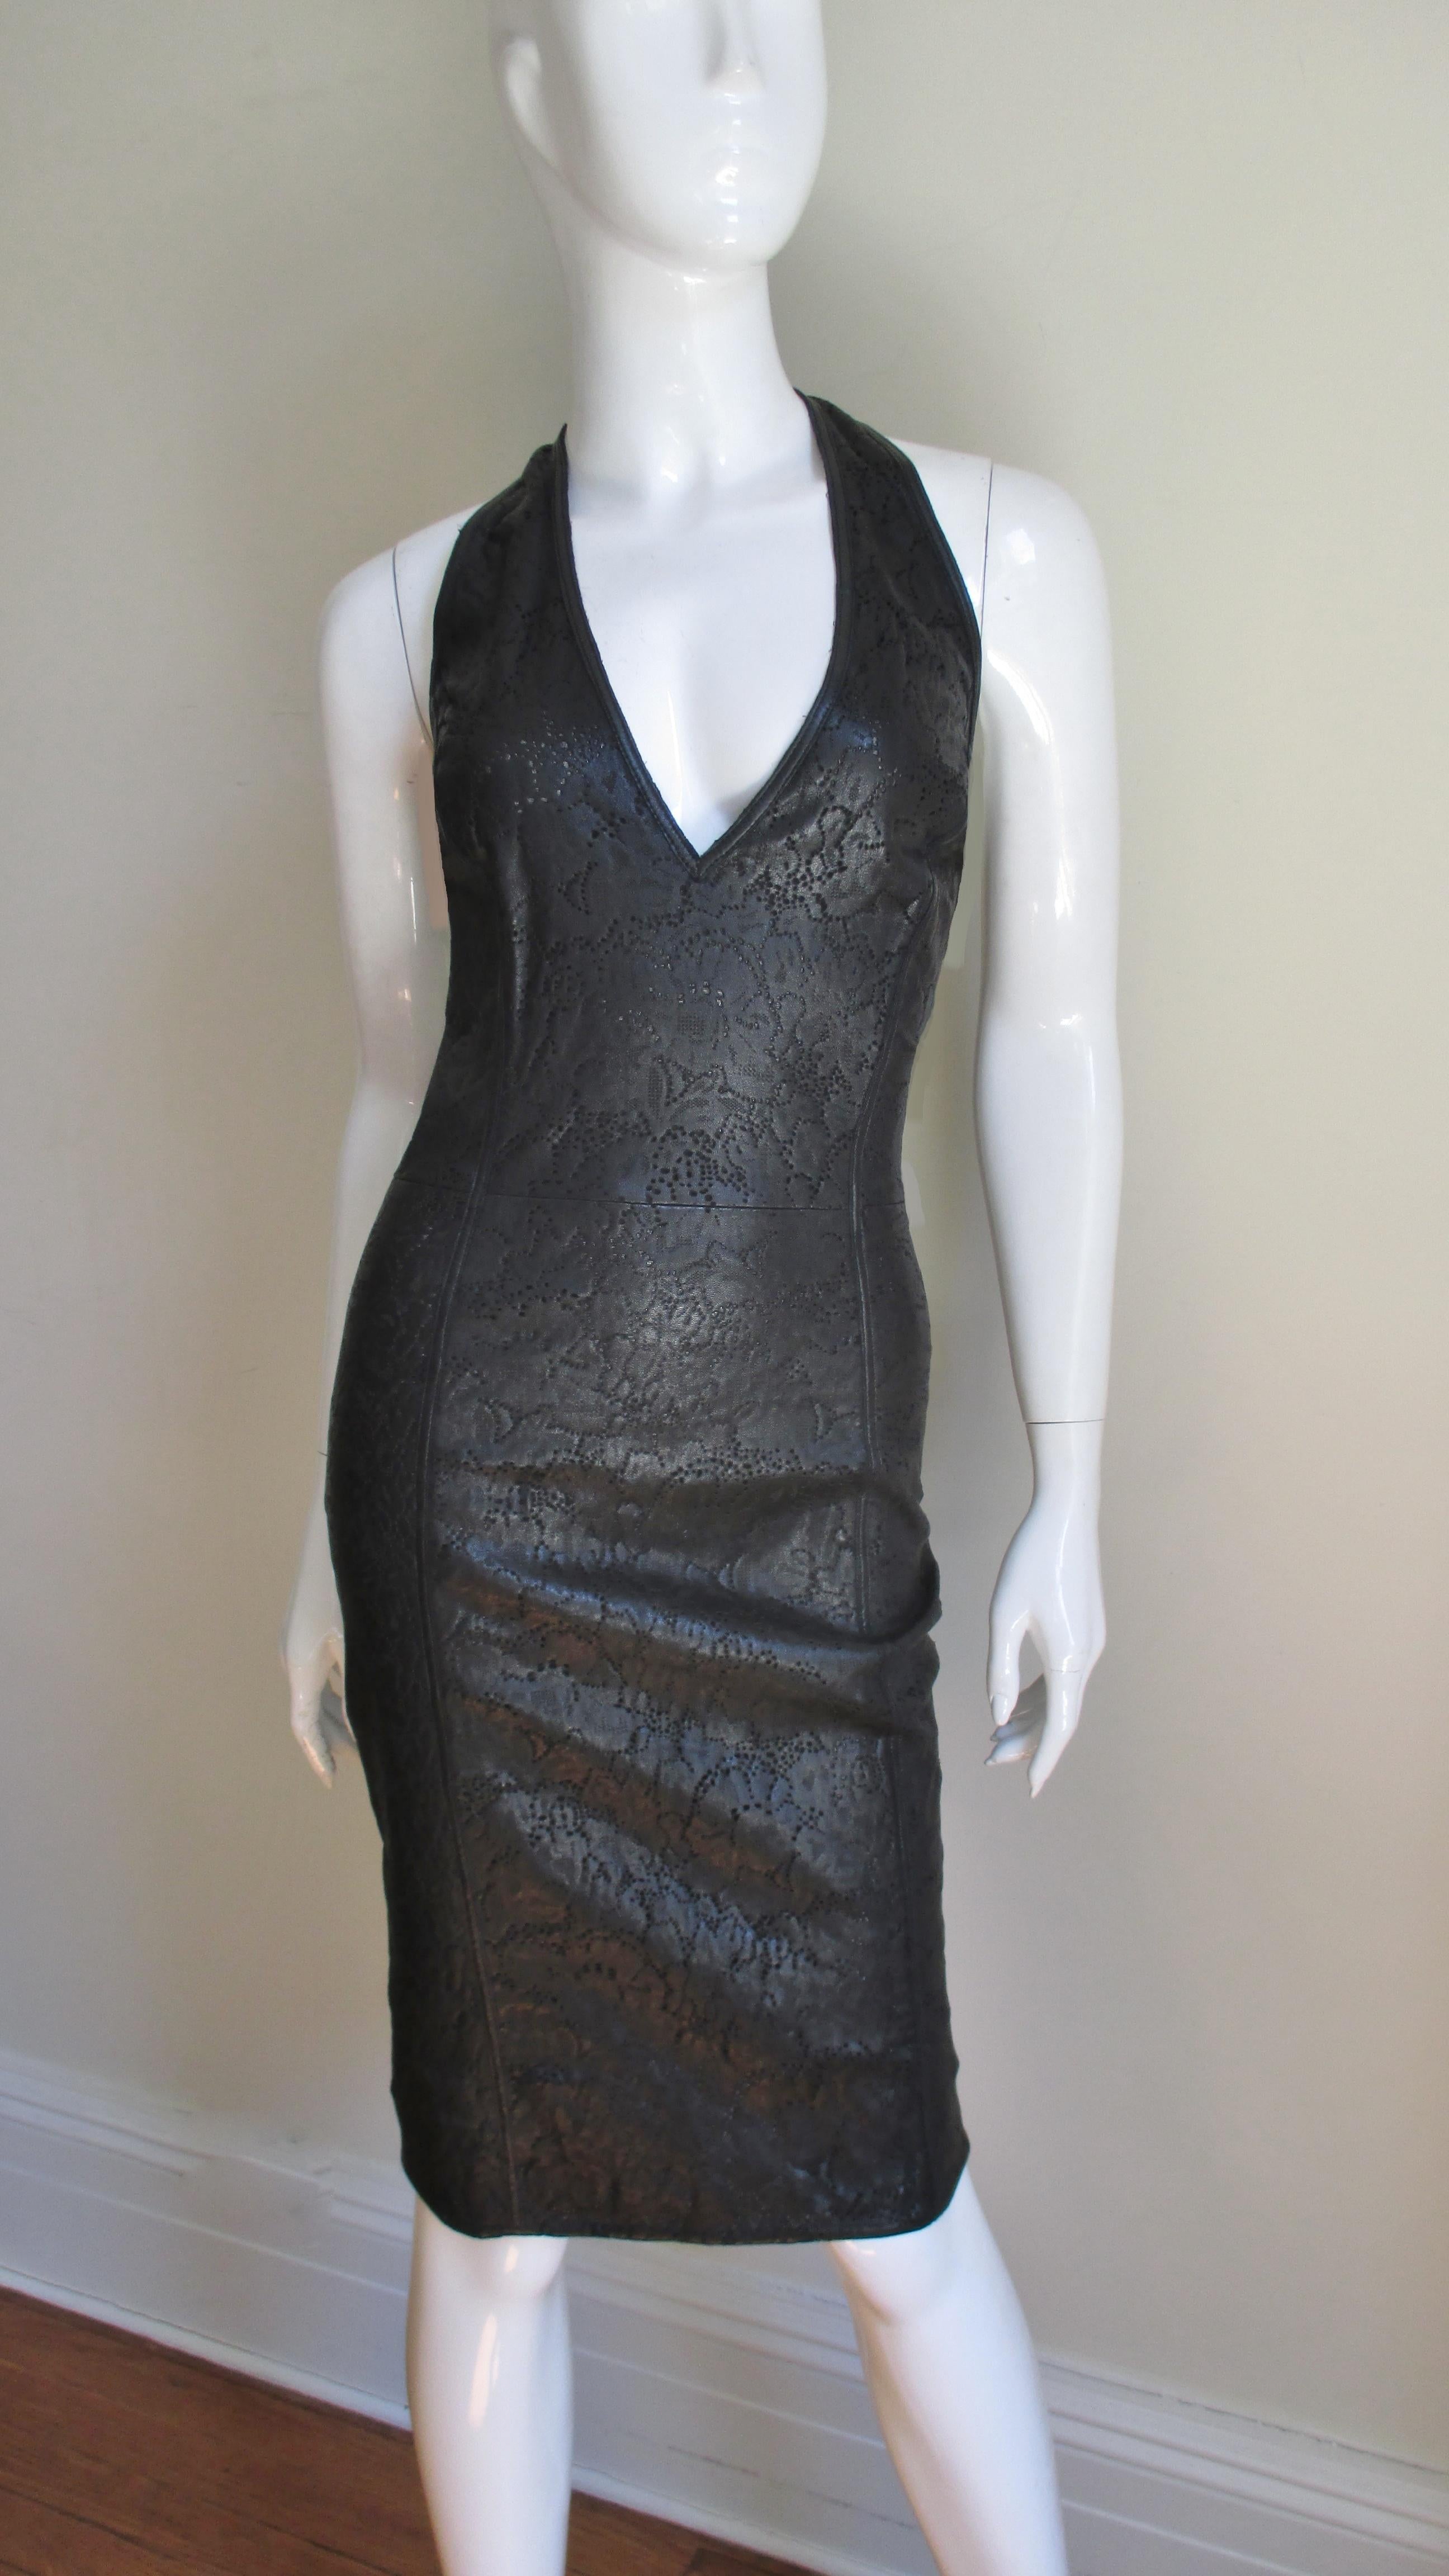 Une fabuleuse robe dos nu en cuir noir découpé au laser de Gianni Versace. Il présente un décolleté plongeant et un dossier bas accentué par deux fines sangles en cuir qui le croisent. Le cuir est finement découpé au laser dans un motif de